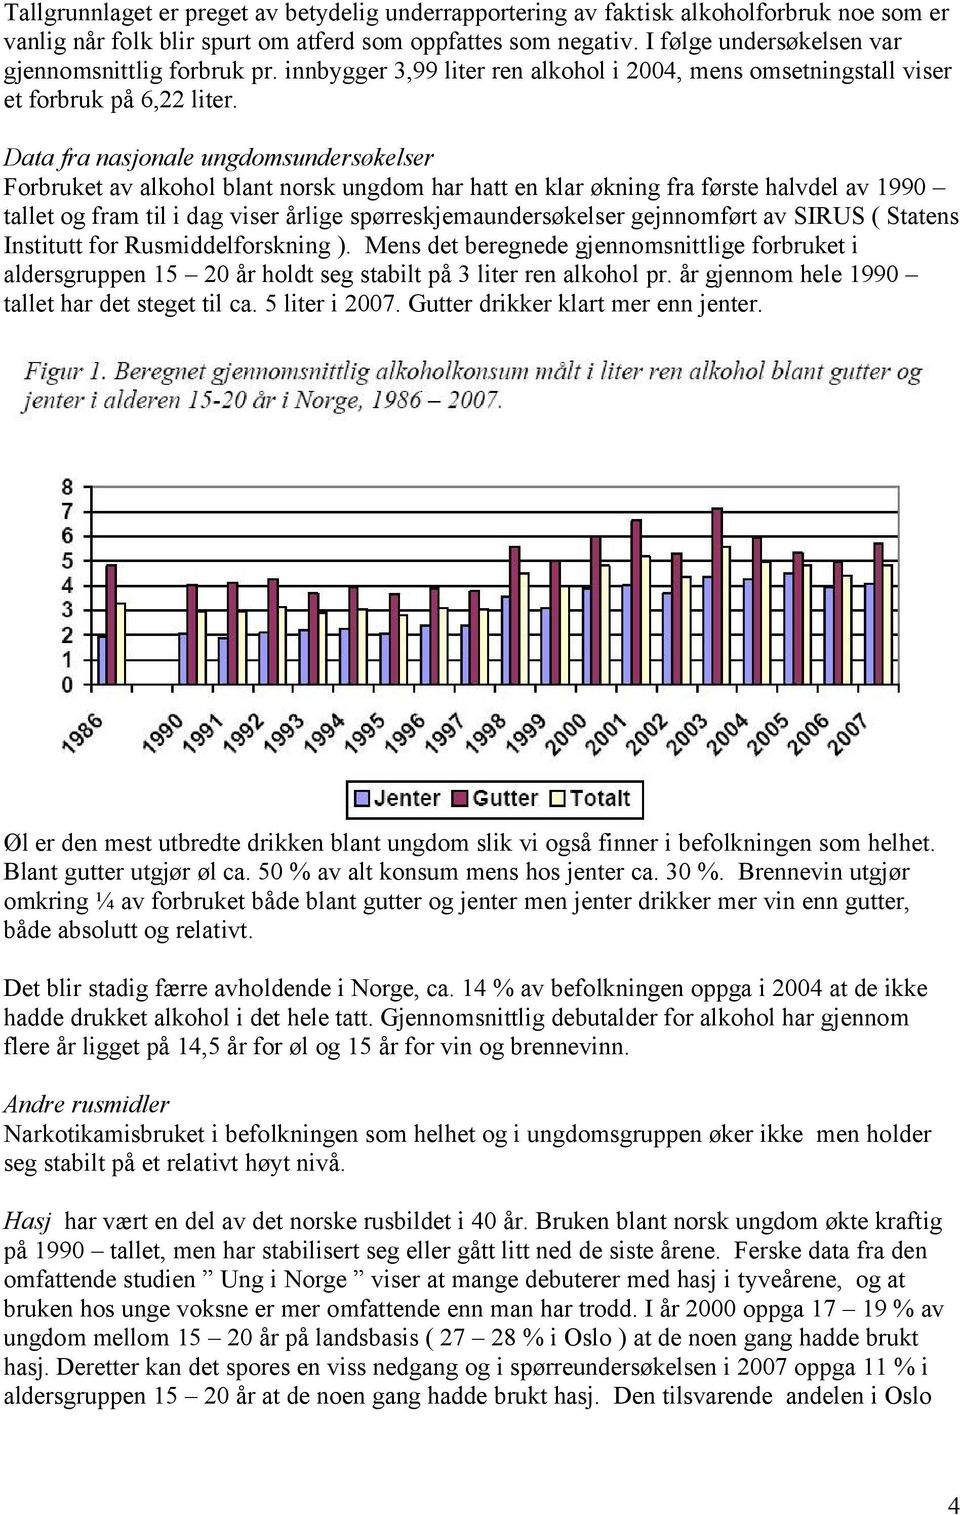 Data fra nasjonale ungdomsundersøkelser Forbruket av alkohol blant norsk ungdom har hatt en klar økning fra første halvdel av 1990 tallet og fram til i dag viser årlige spørreskjemaundersøkelser